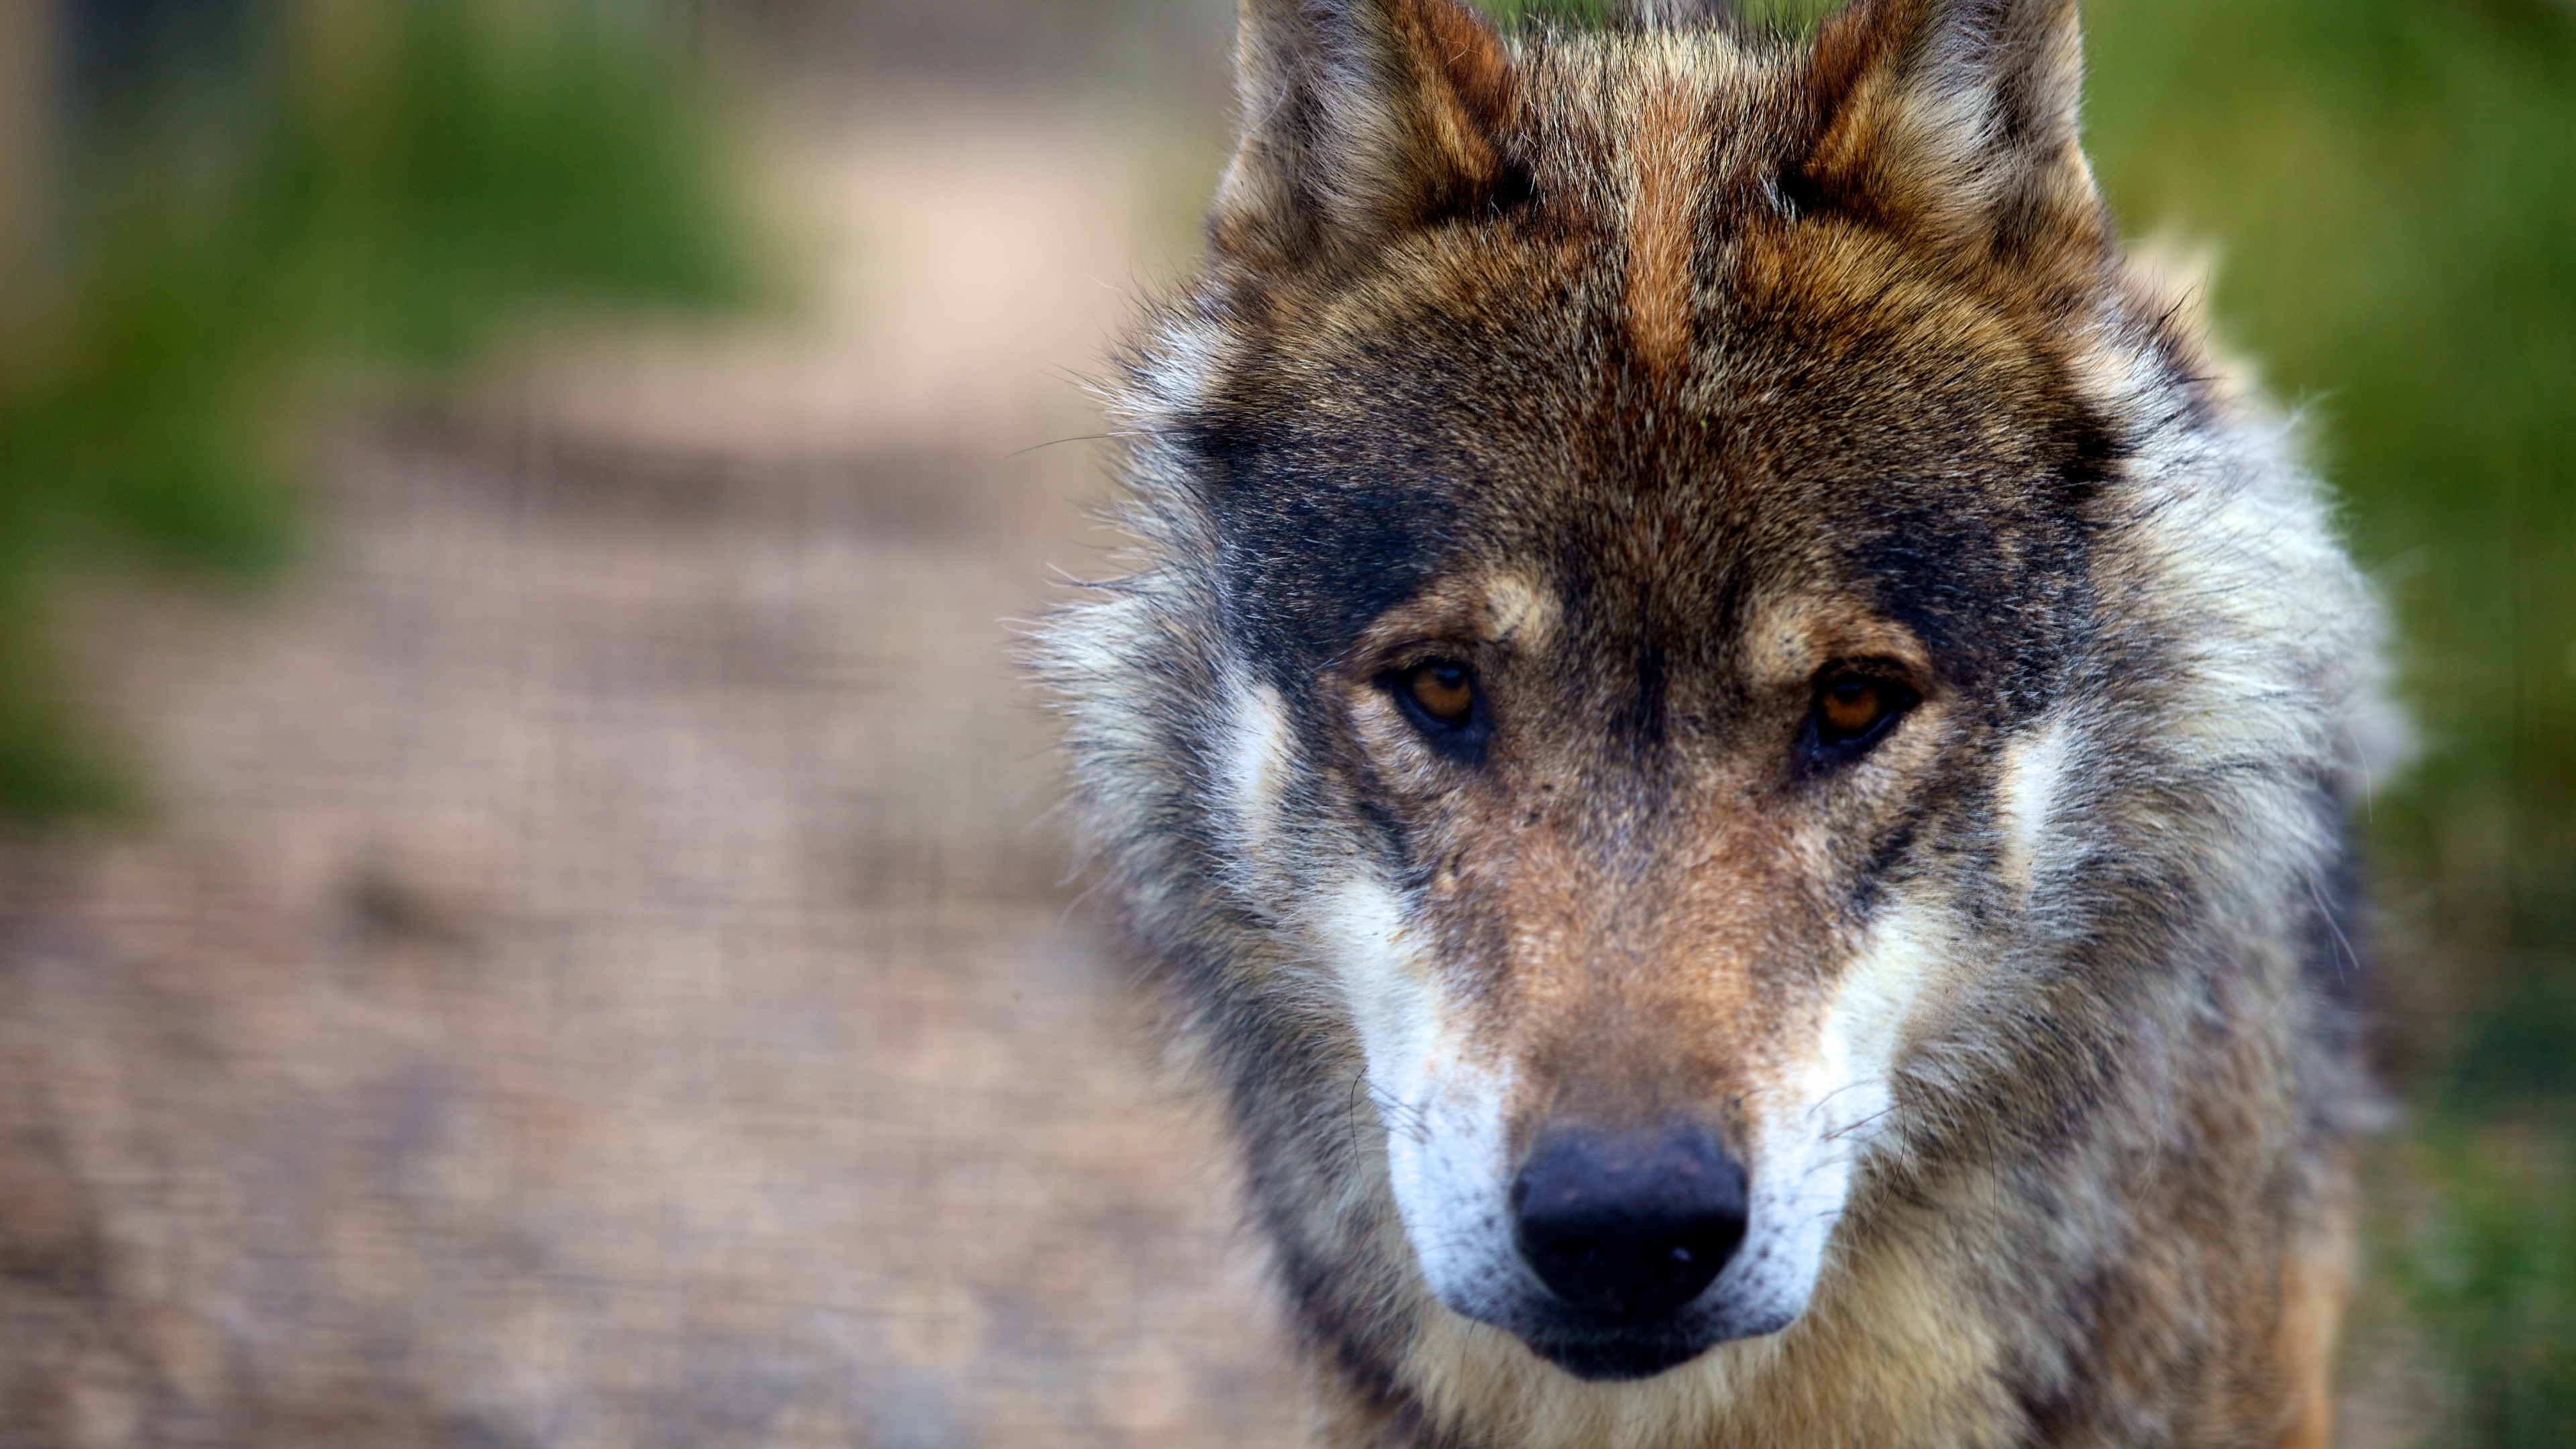 狼, 野生动物, 捷克斯洛伐克那只狼狗, 那只狼狗, 狗喜欢哺乳动物 壁纸 3840x2160 允许